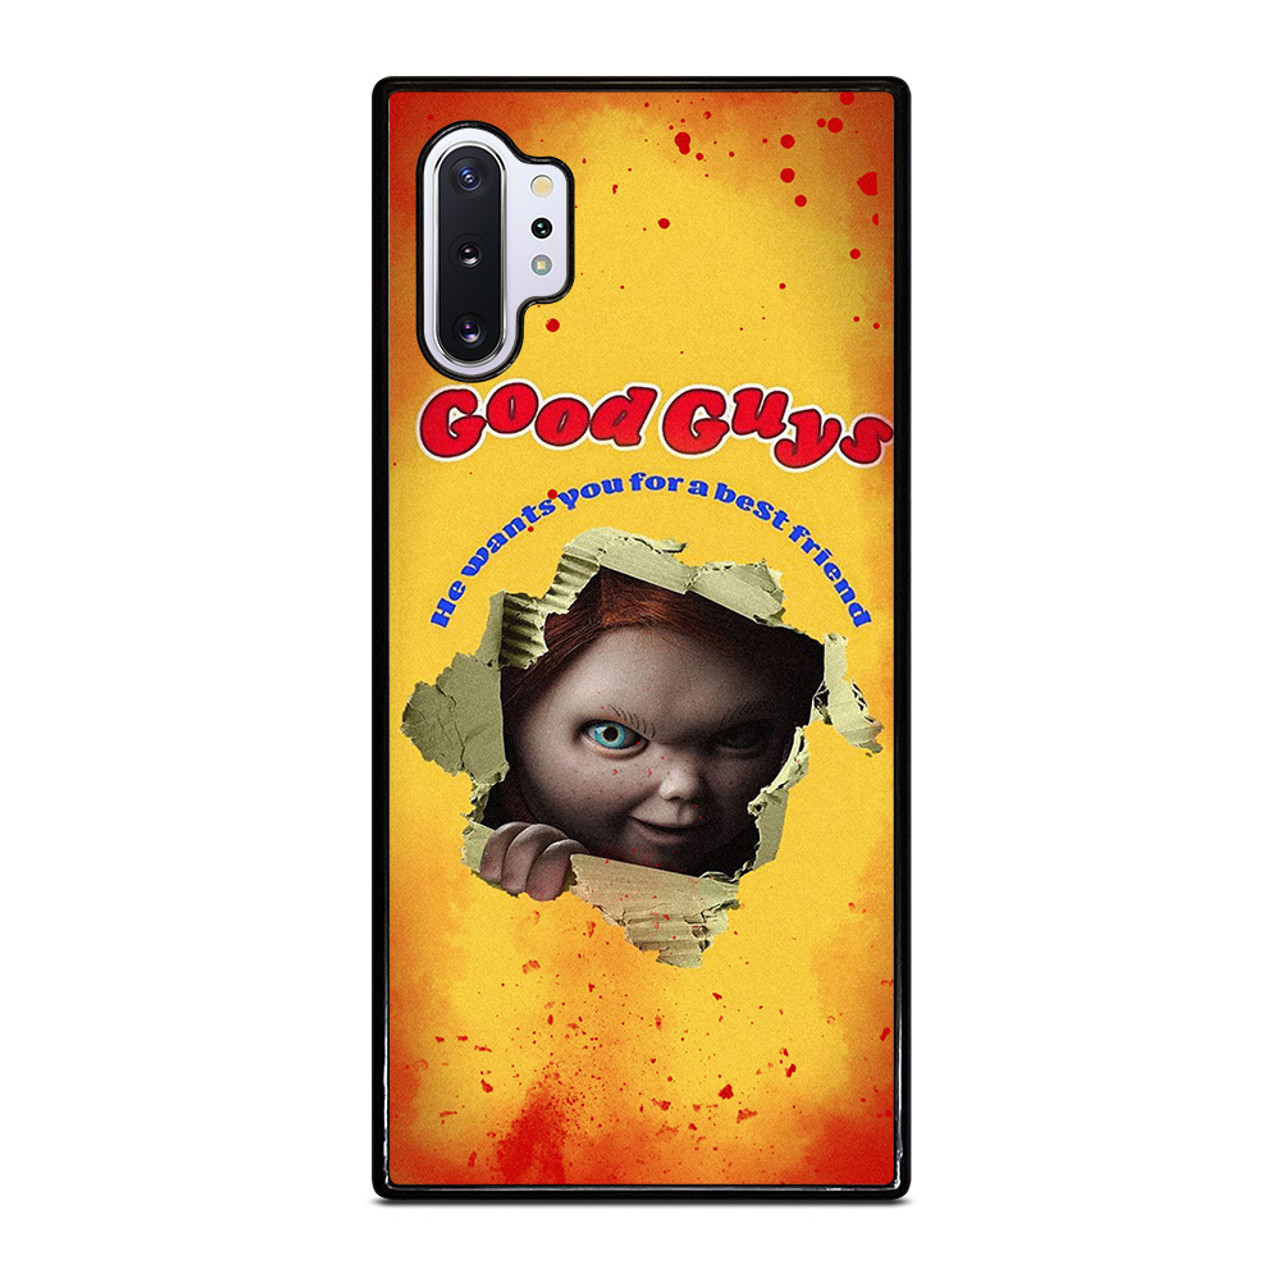 Samsung Galaxy S20 Case Chucky, Good Guys Chucky Case Samsung